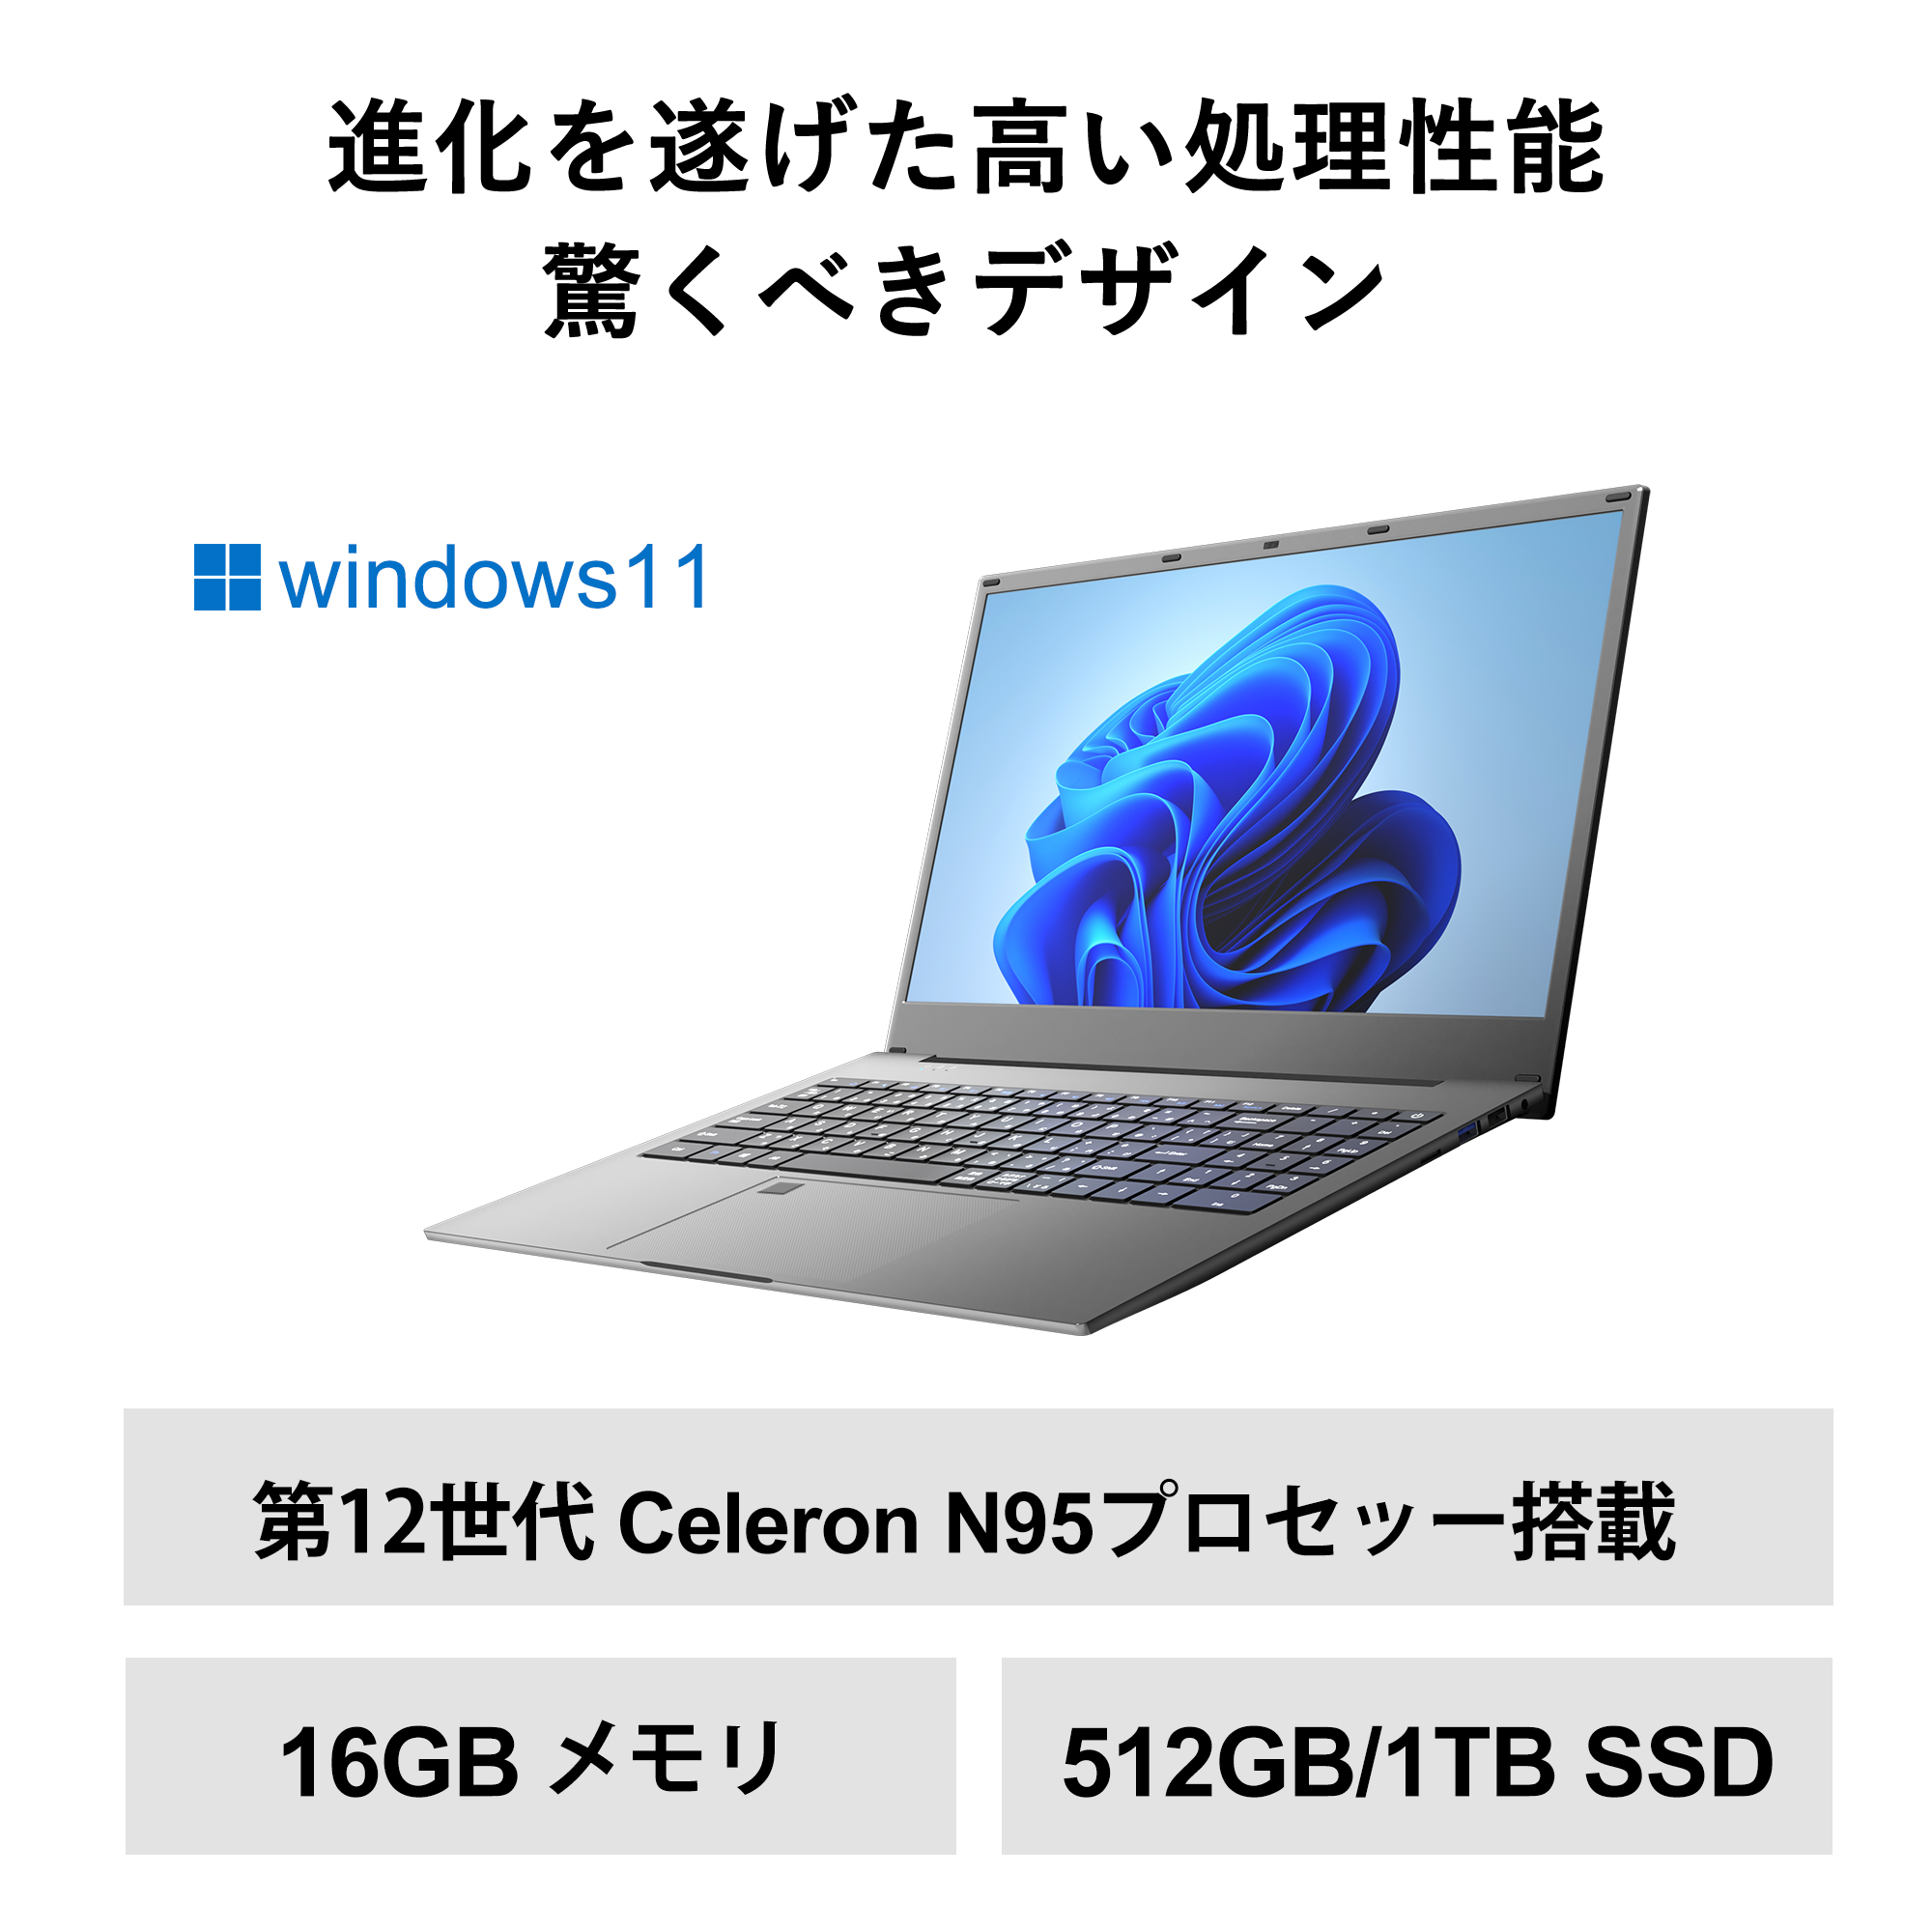 パソコン初心者向け 軽量薄型 ノートパソコン インテルCeleron N95  メモリー:16GB 高速SSD512GB 1TB フルHD液晶／10キー 指紋認証  windows11 wps